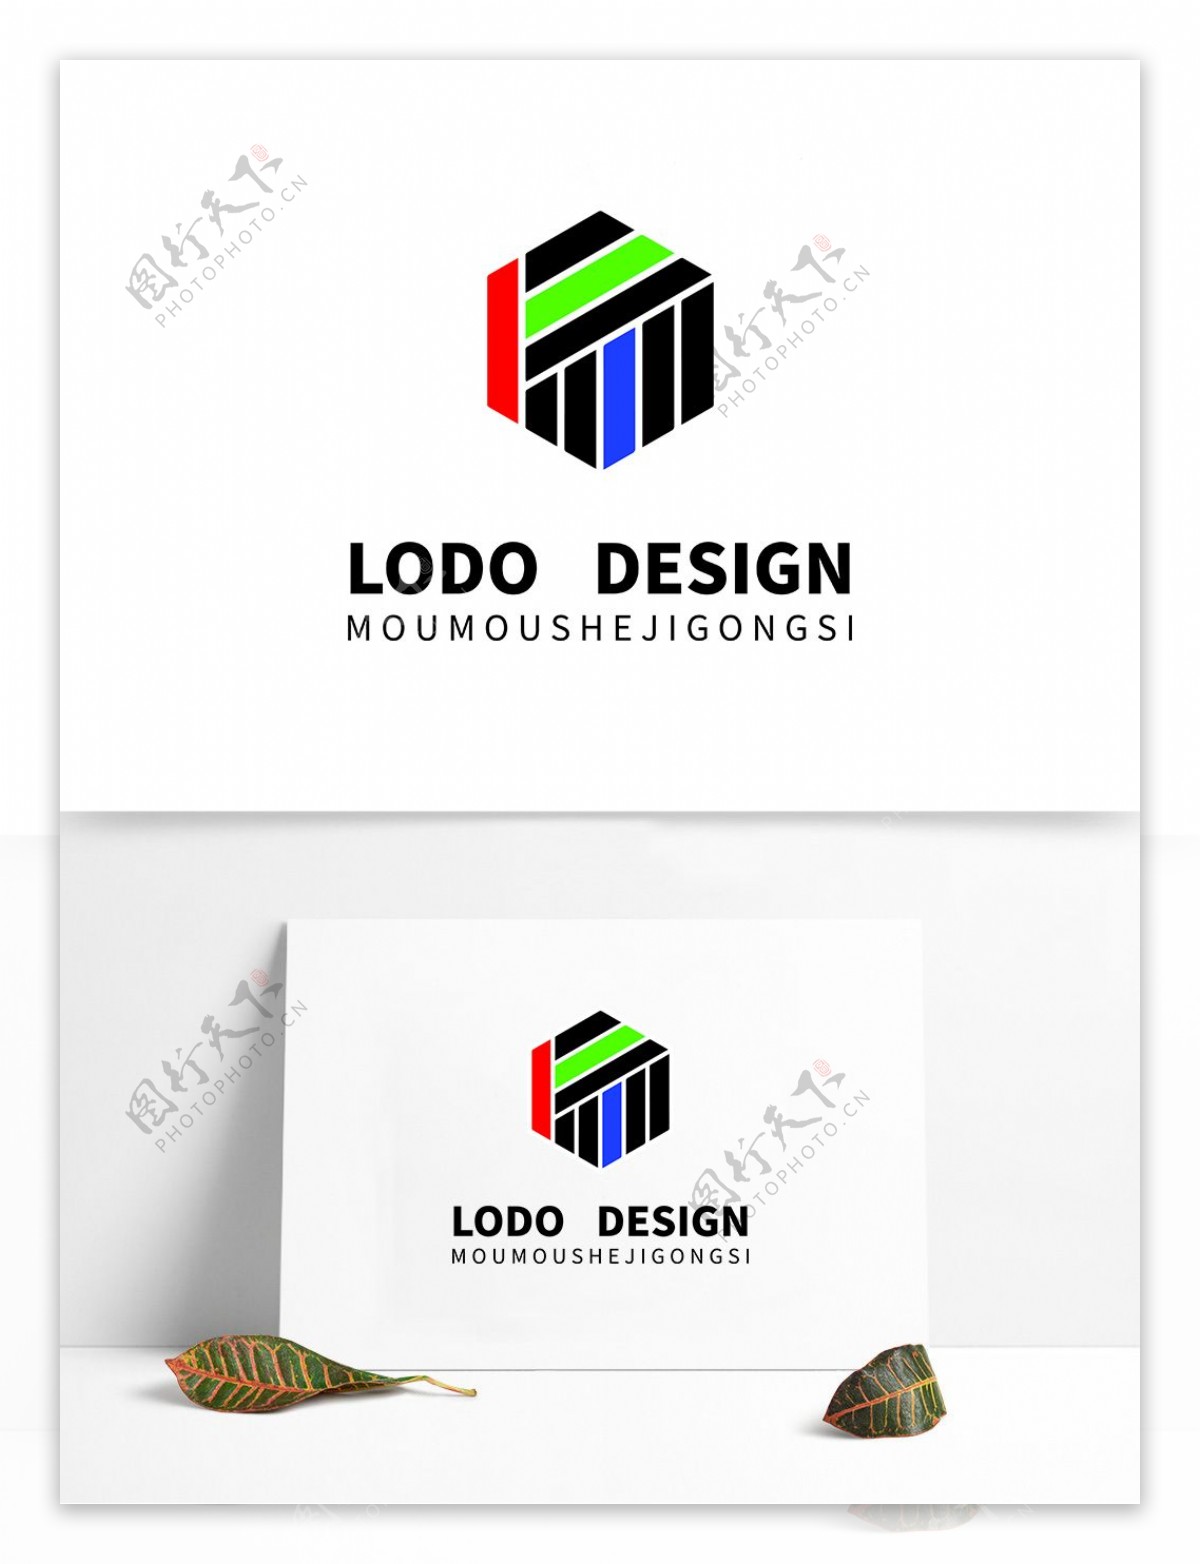 原创手绘科技行业标识LOGO设计